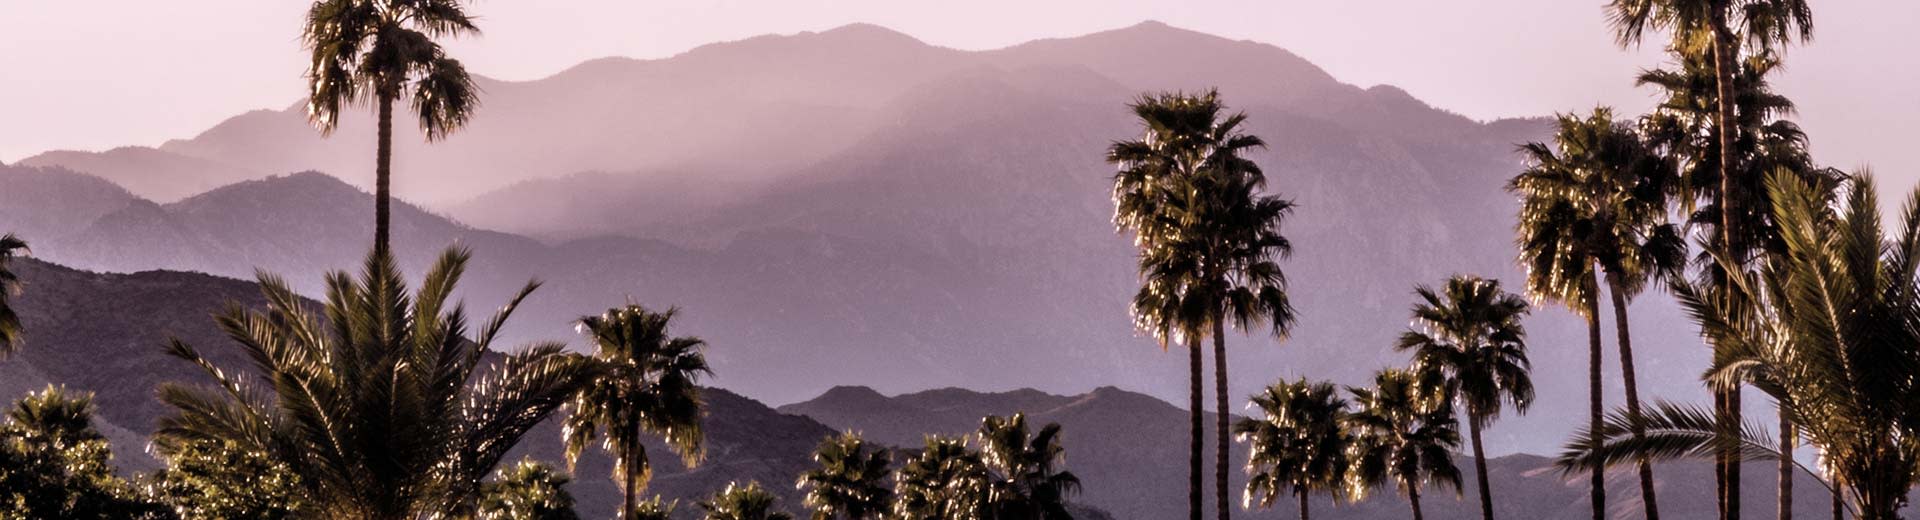 Hügel im Hintergrund, während Palmstrees den Vordergrund an einem klaren und heißen Tag in Palm Springs dominieren.